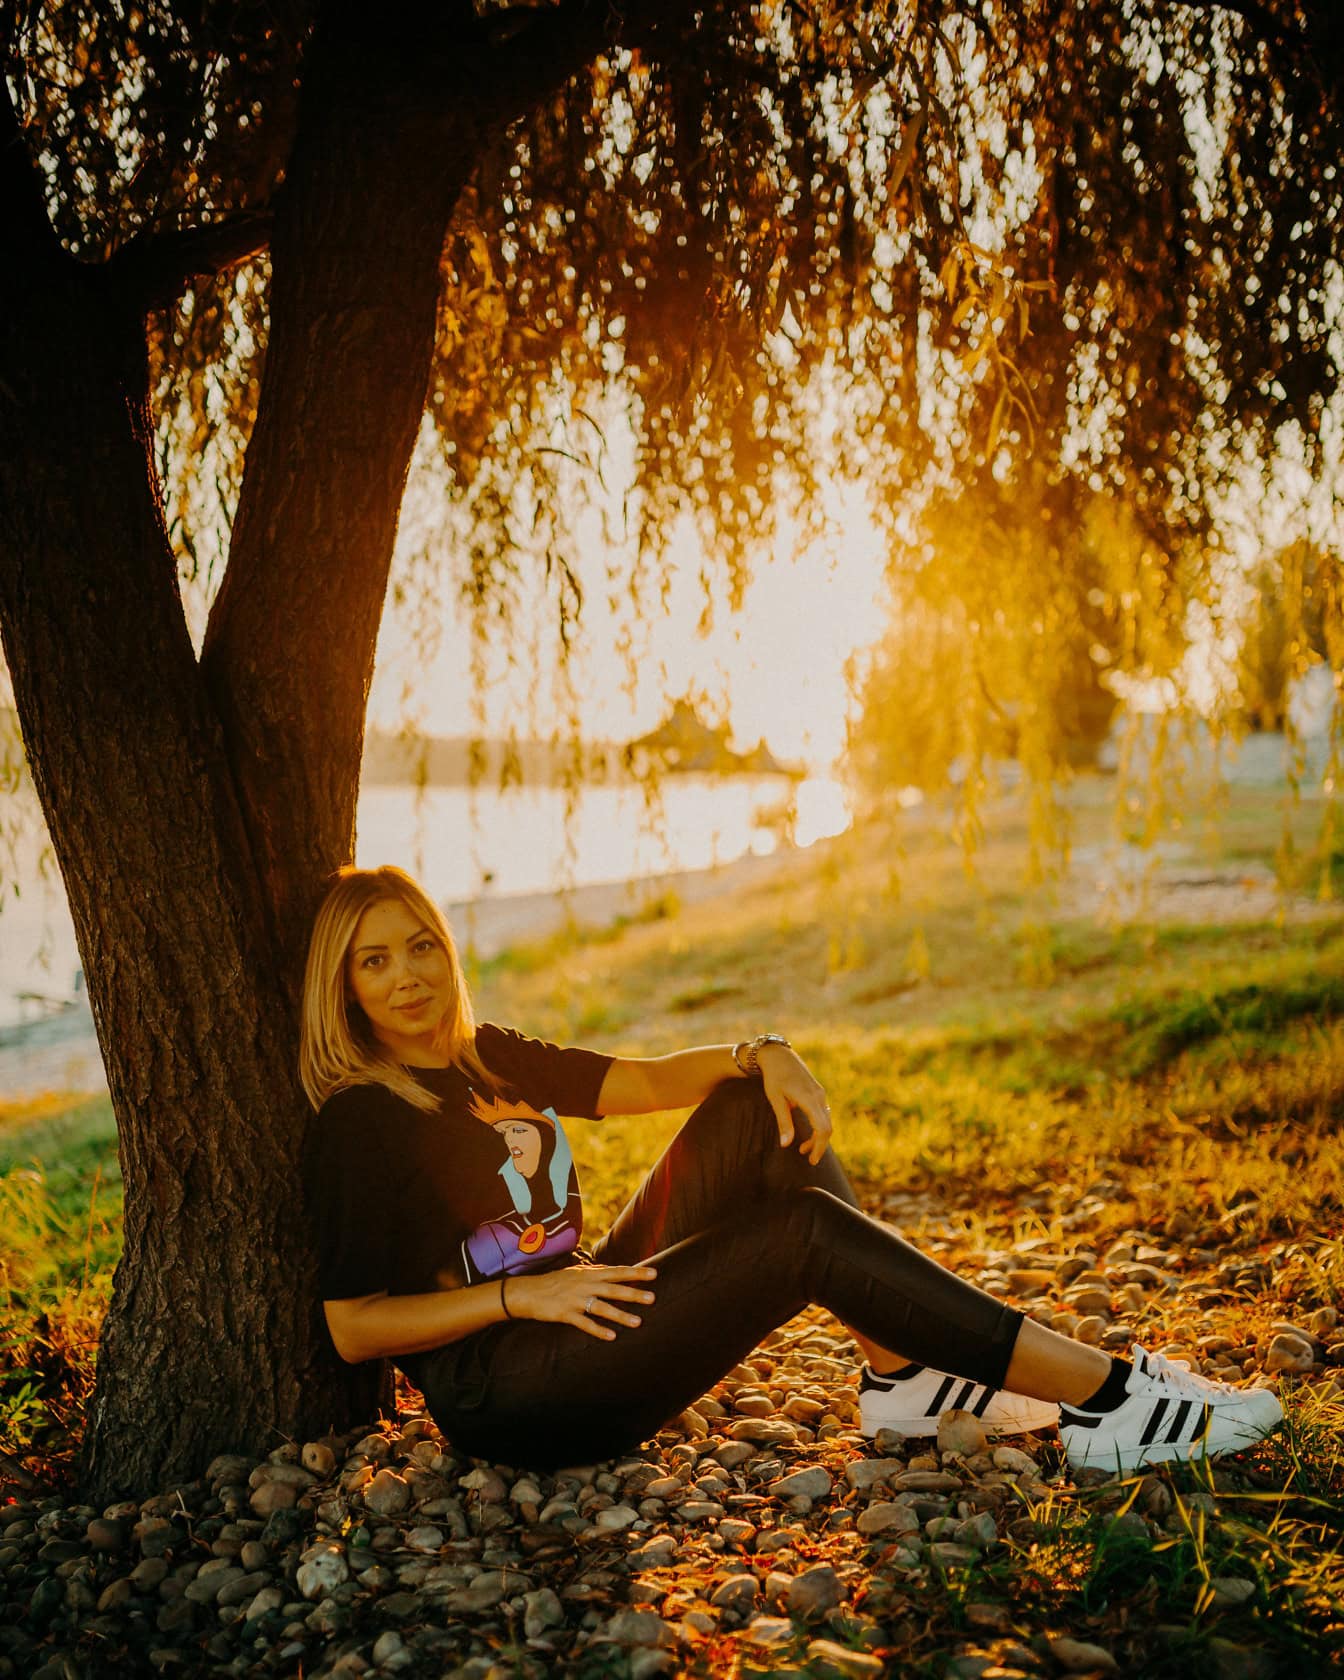 Kaunis teini-ikäinen tyttö istuu puun alla upealla auringonlaskulla taustalla